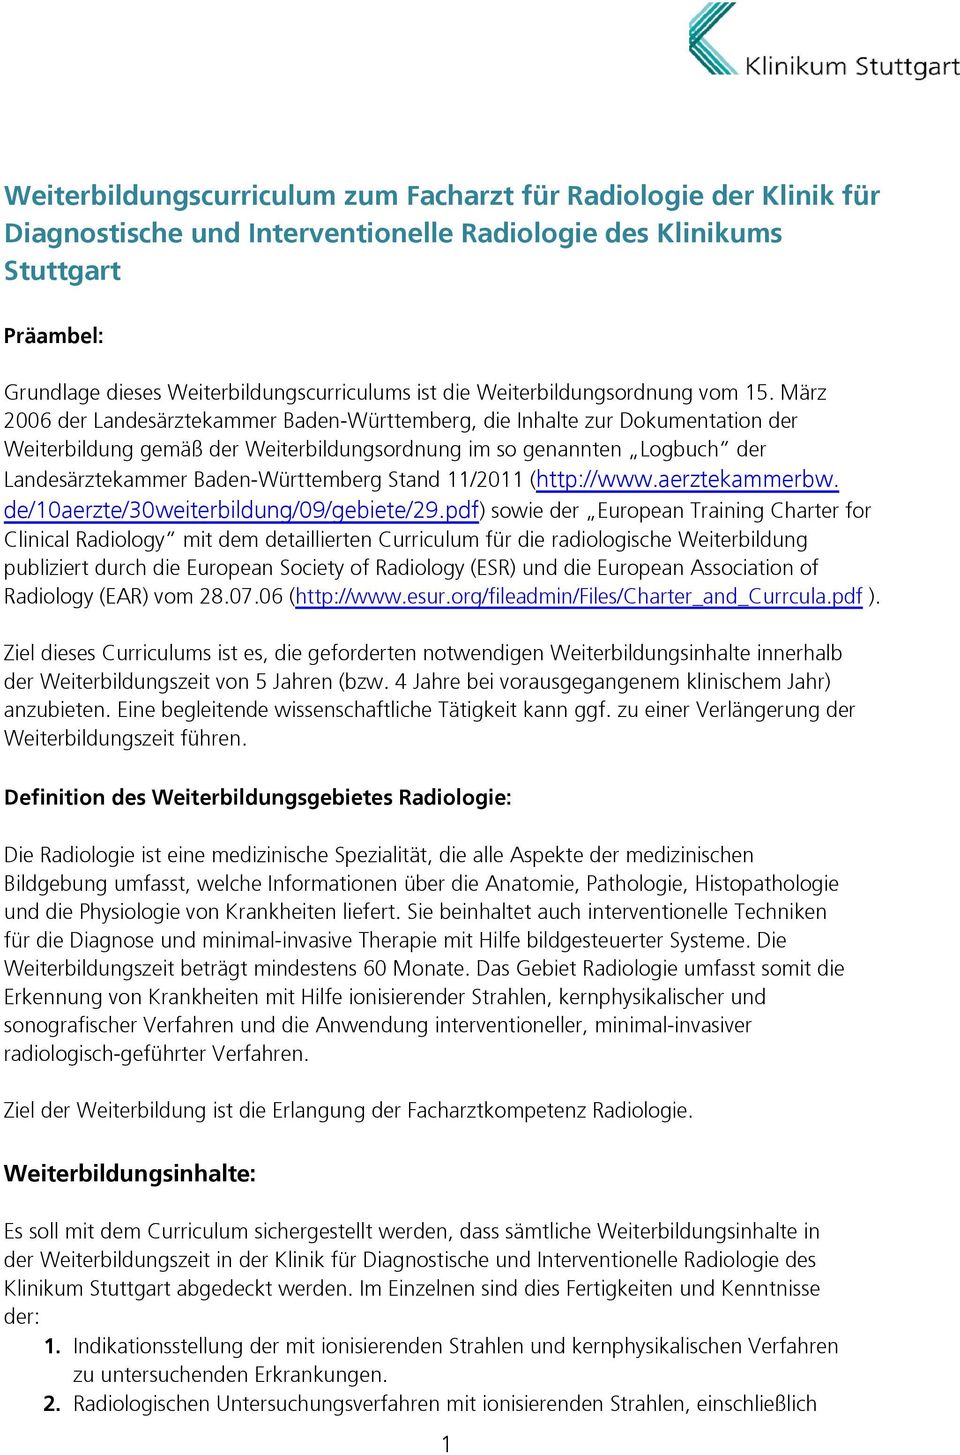 März 2006 der Landesärztekammer Baden-Württemberg, die Inhalte zur Dokumentation der Weiterbildung gemäß der Weiterbildungsordnung im so genannten Logbuch der Landesärztekammer Baden-Württemberg